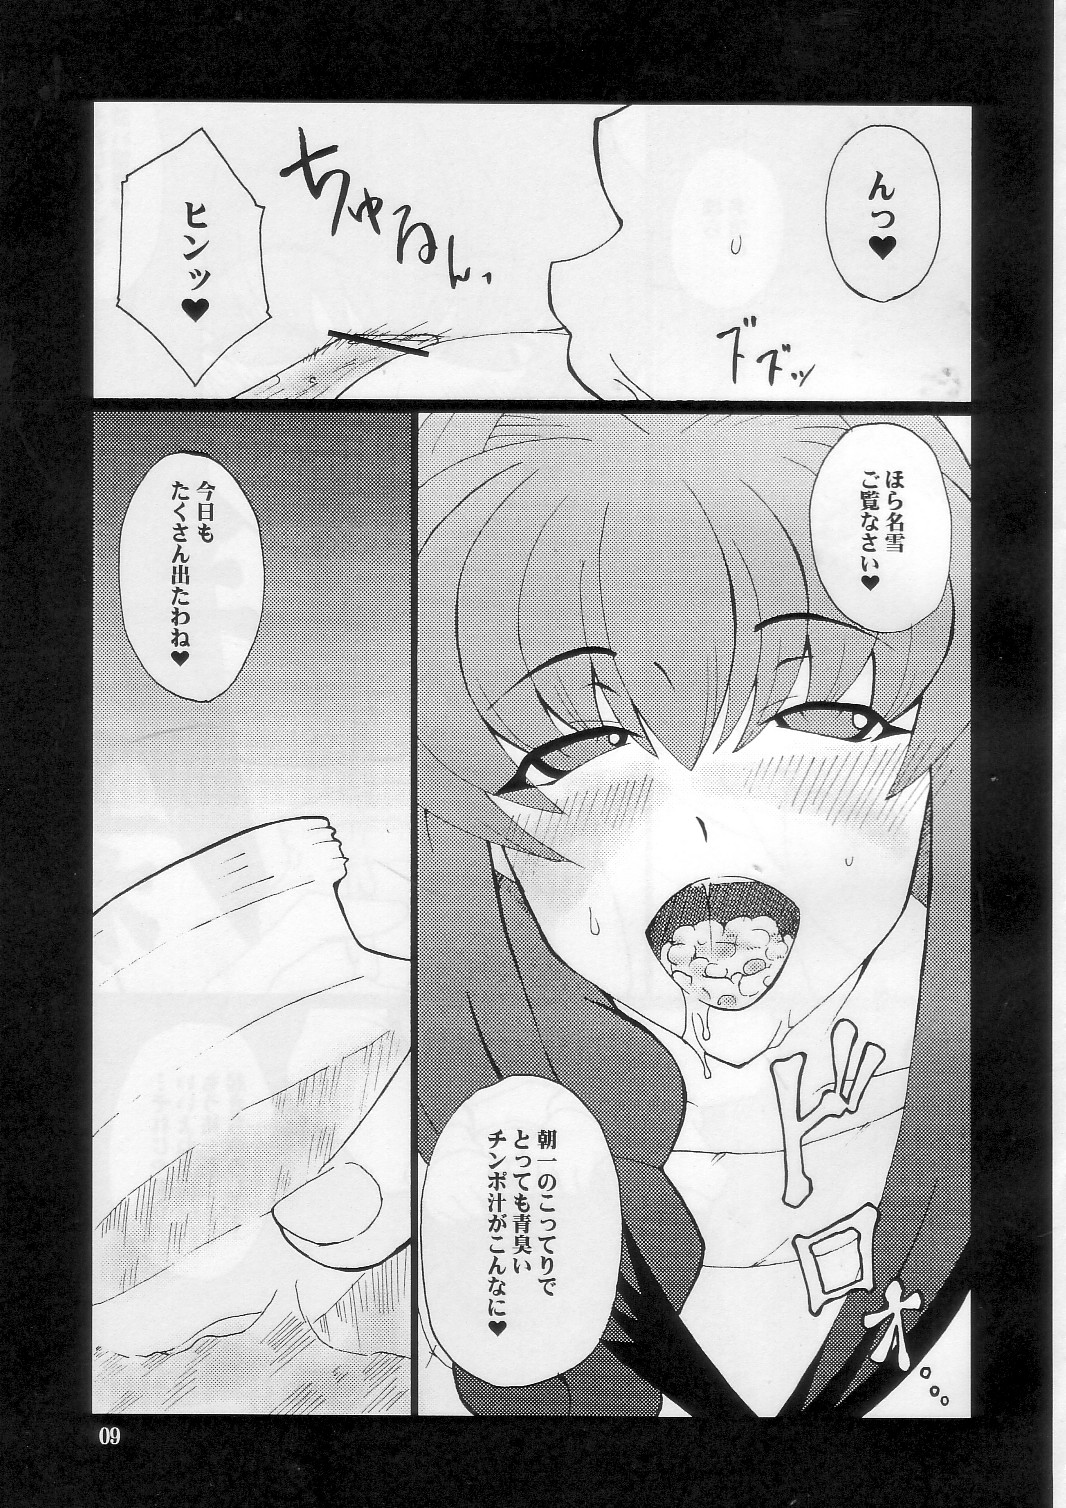 [Hanjuku Yude Tamago] Kyouki vol.5 (Kanon) page 9 full